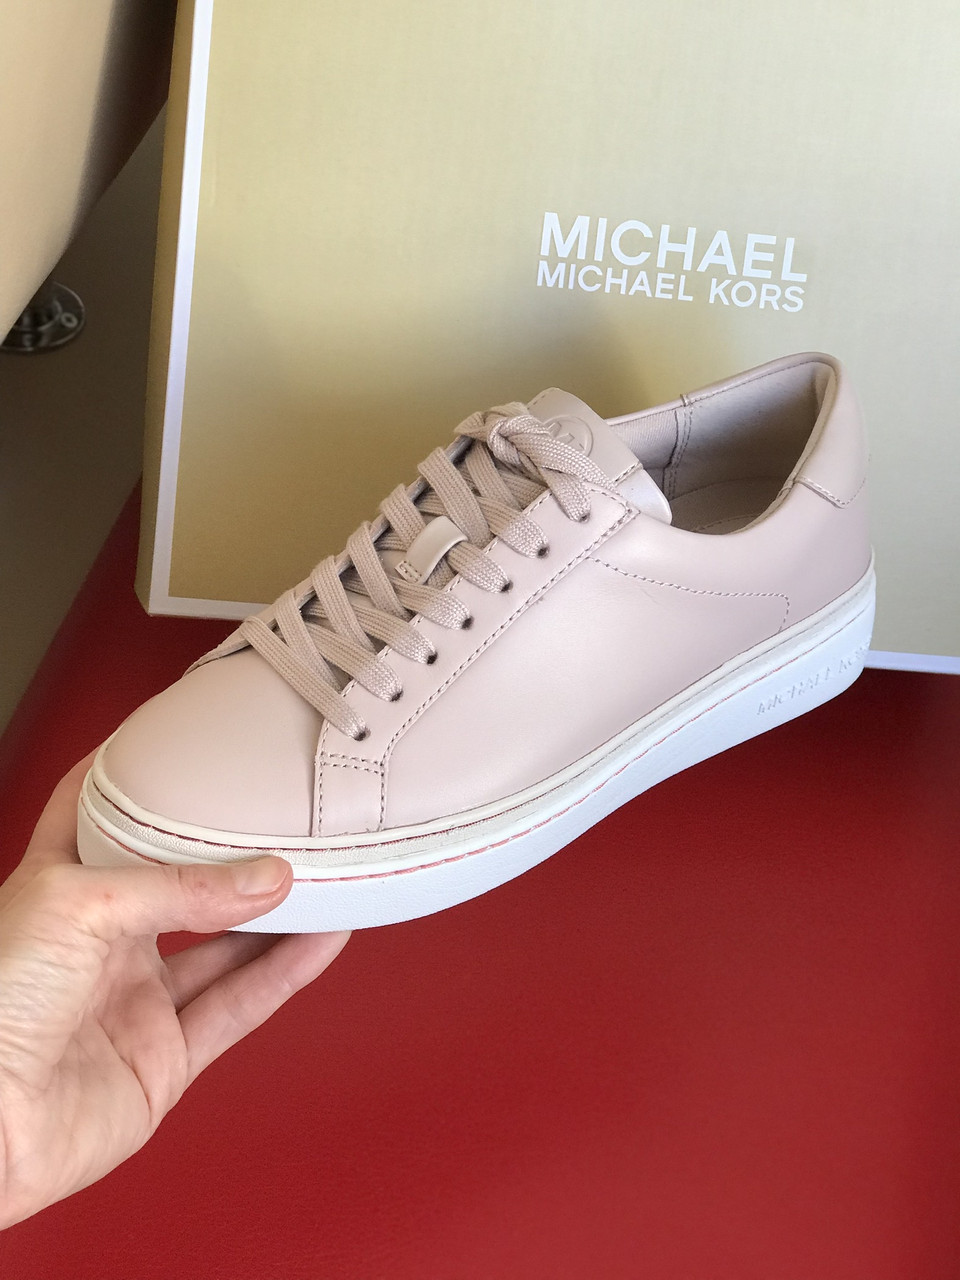 Майкл Корс обувь женская купить  Michael Kors обувь